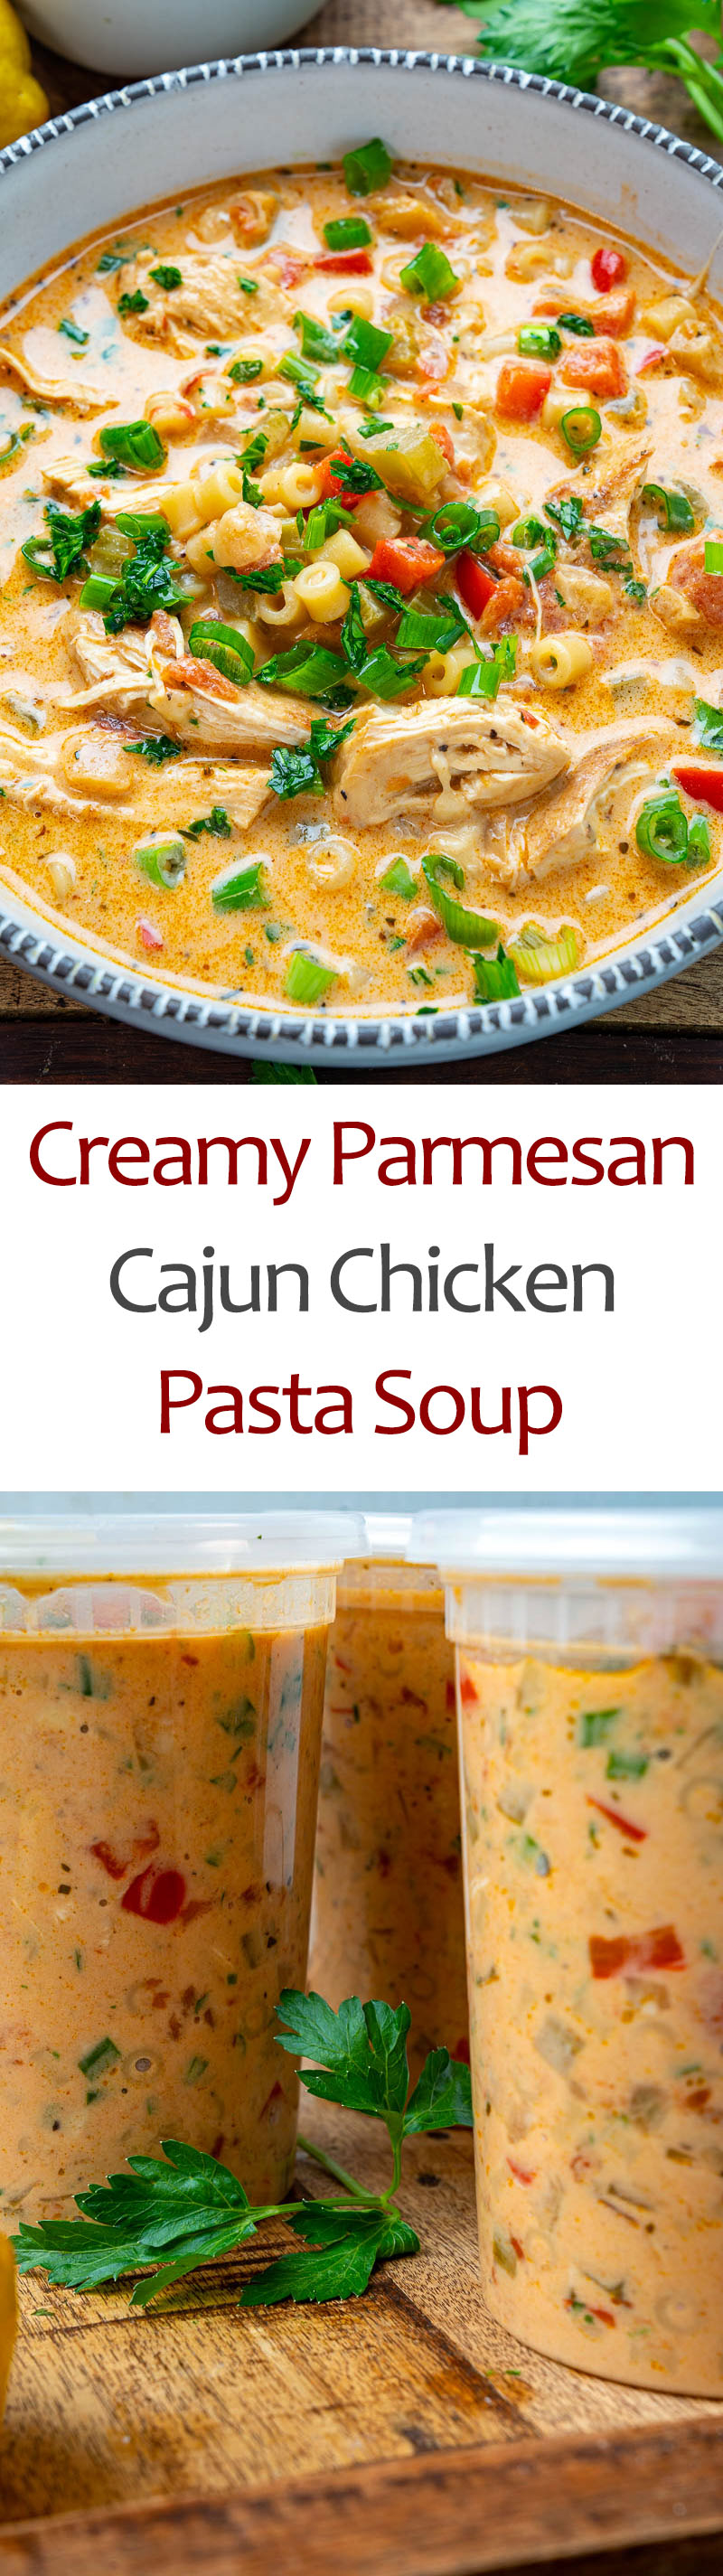 Creamy Parmesan Cajun Chicken Pasta Soup